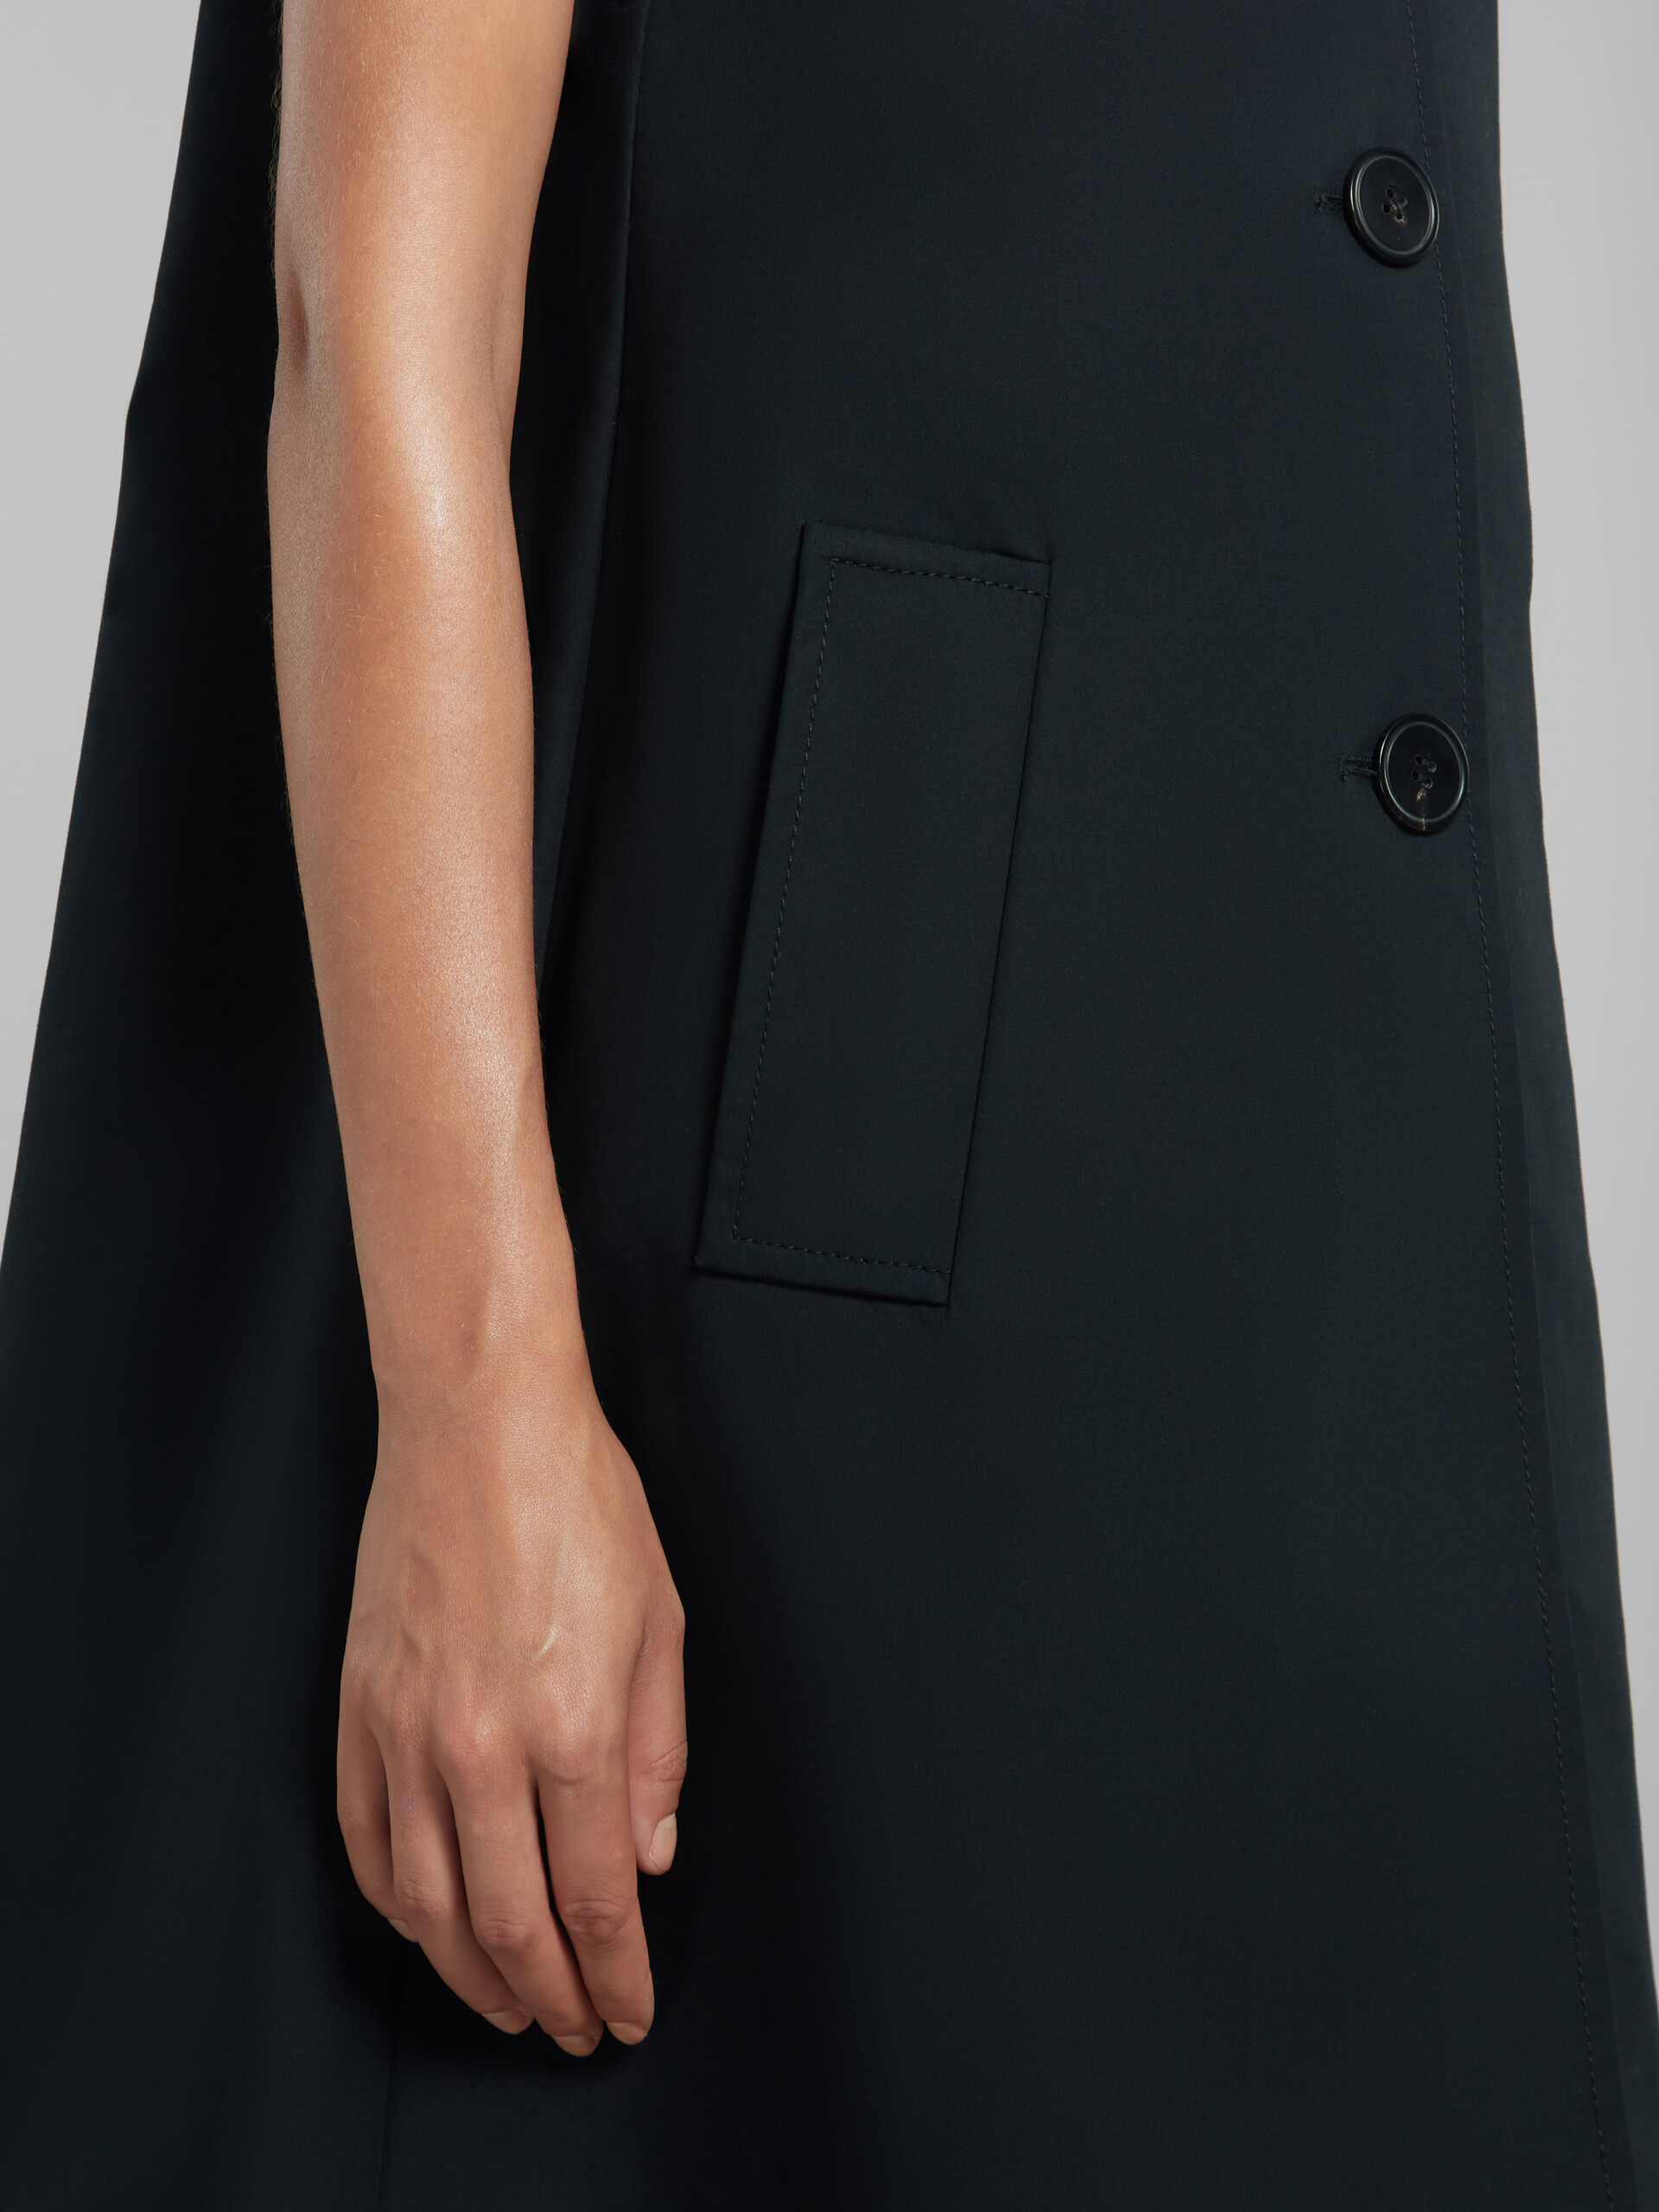 Vestido negro de algodón reconstituido corte cocoon - Chaleco - Image 5